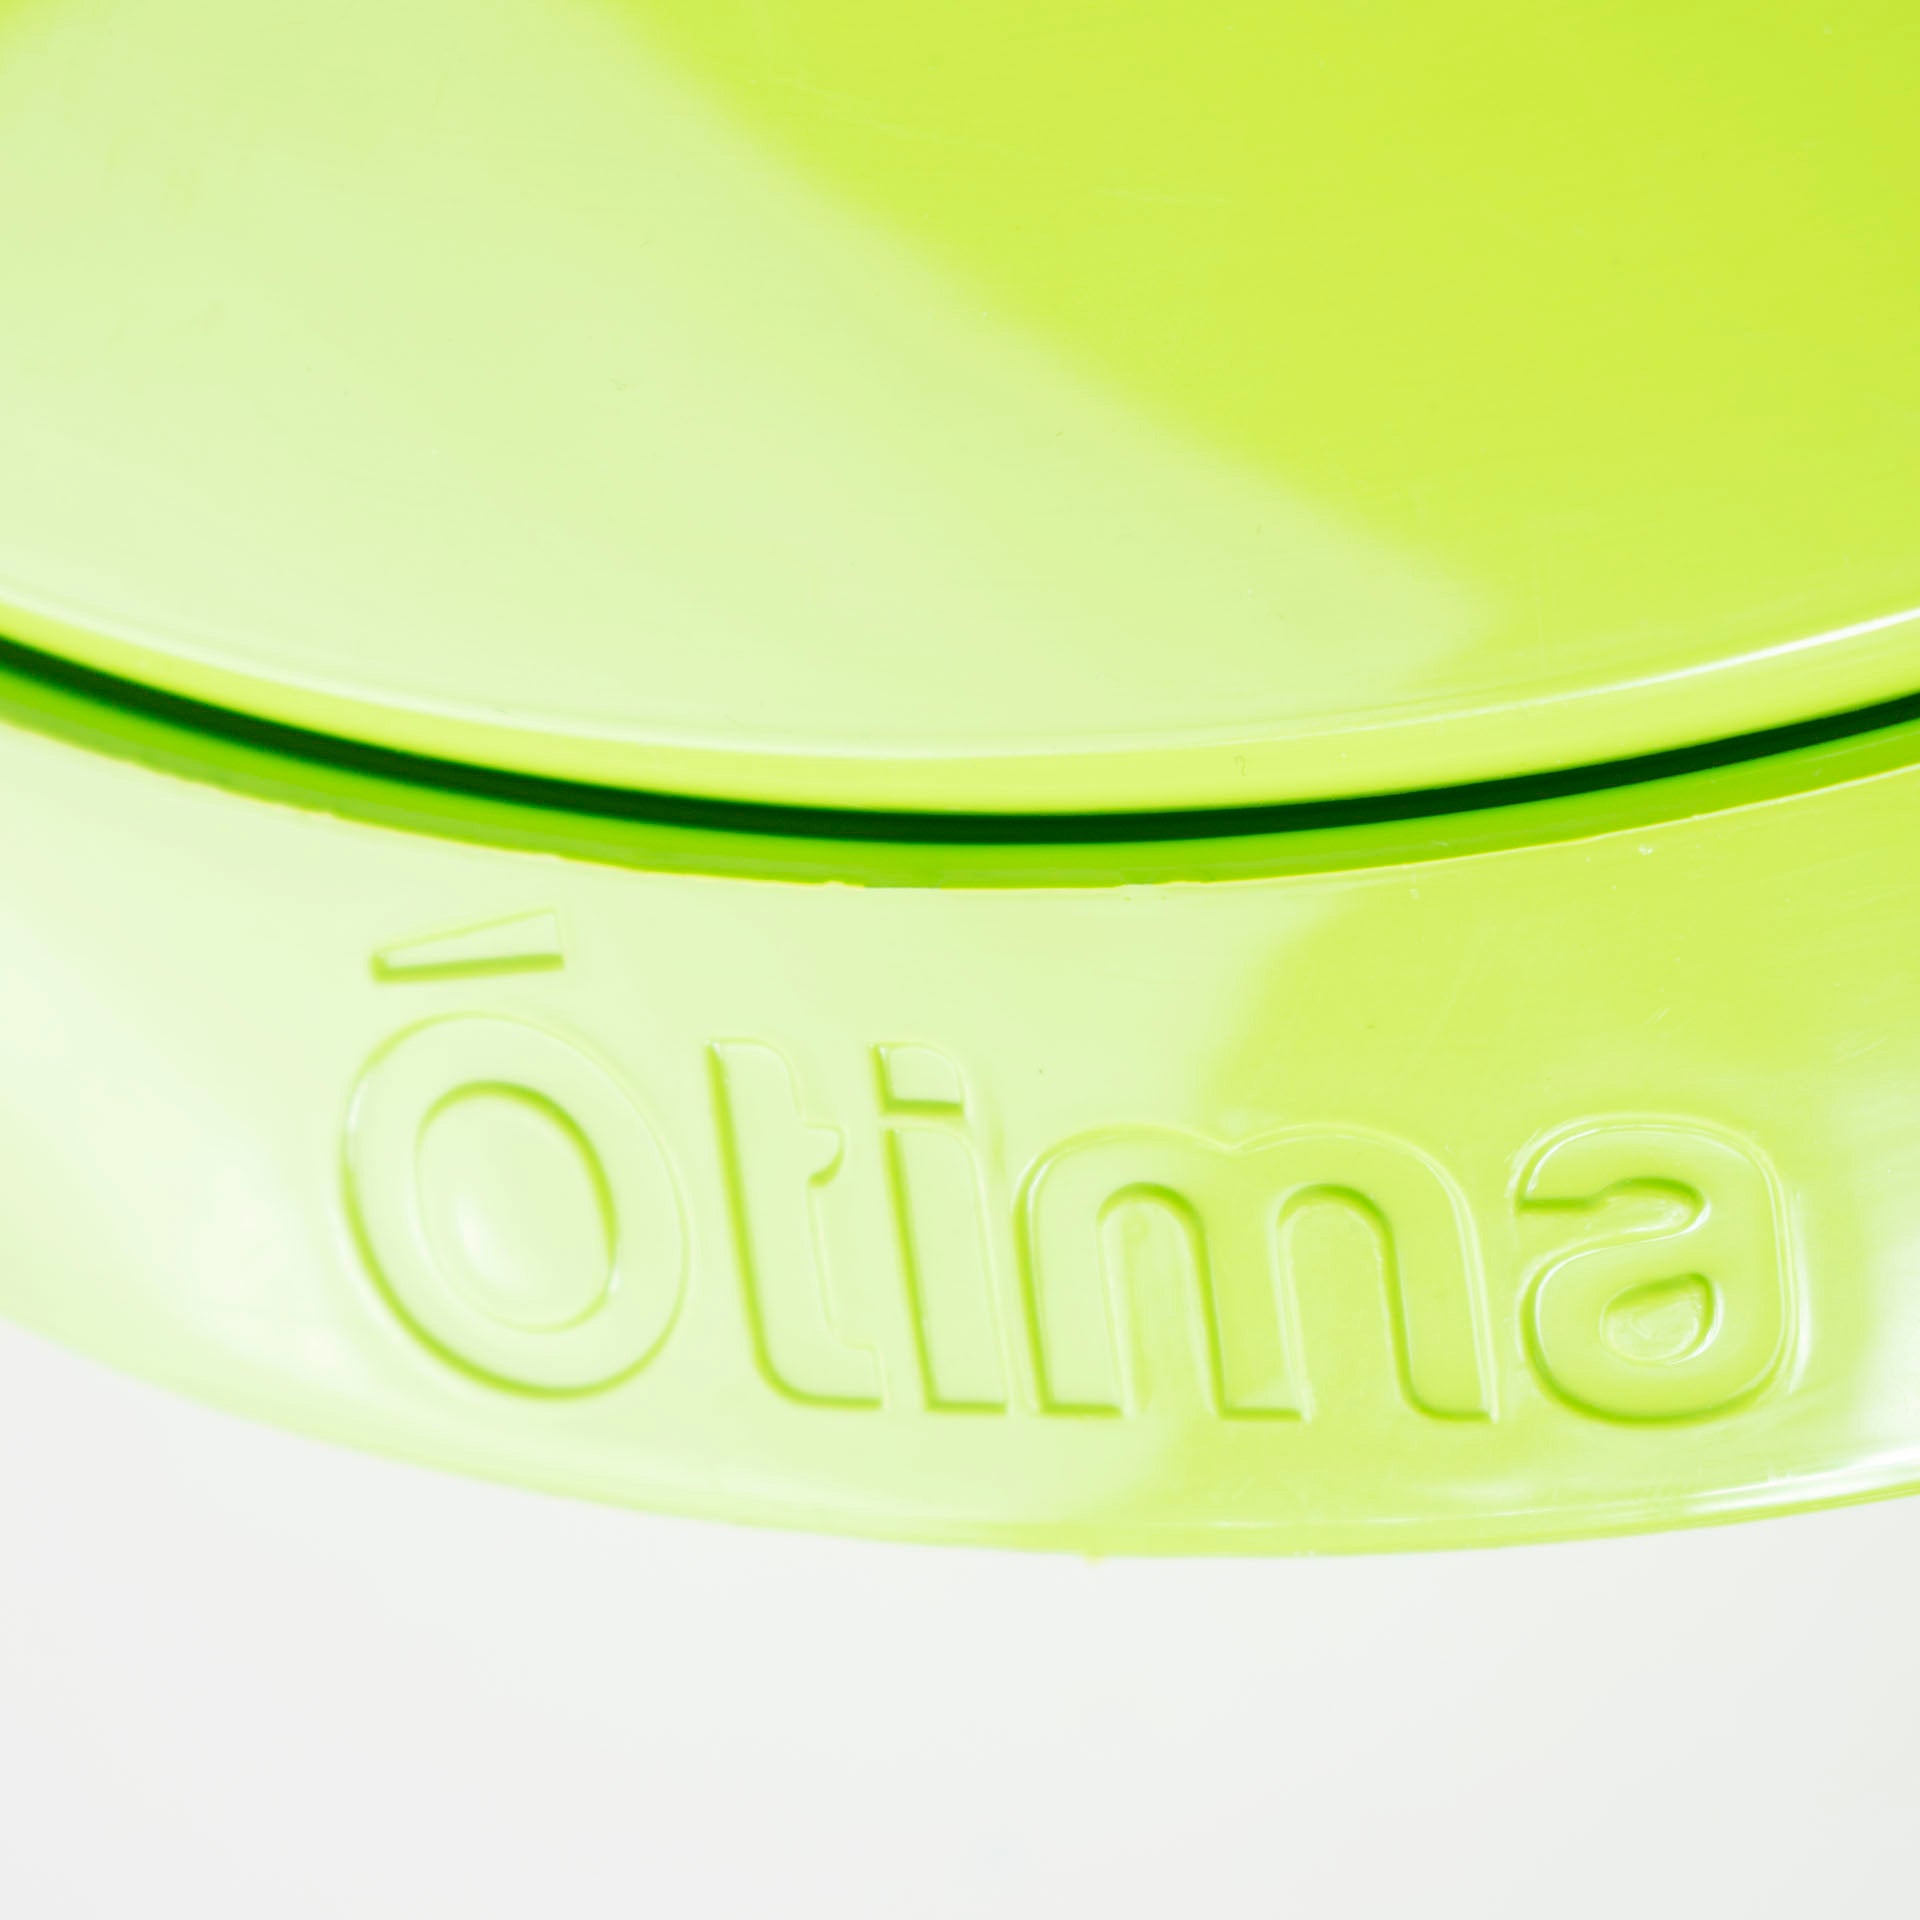 Otima Plastic Salad Bowl with Lid 12L